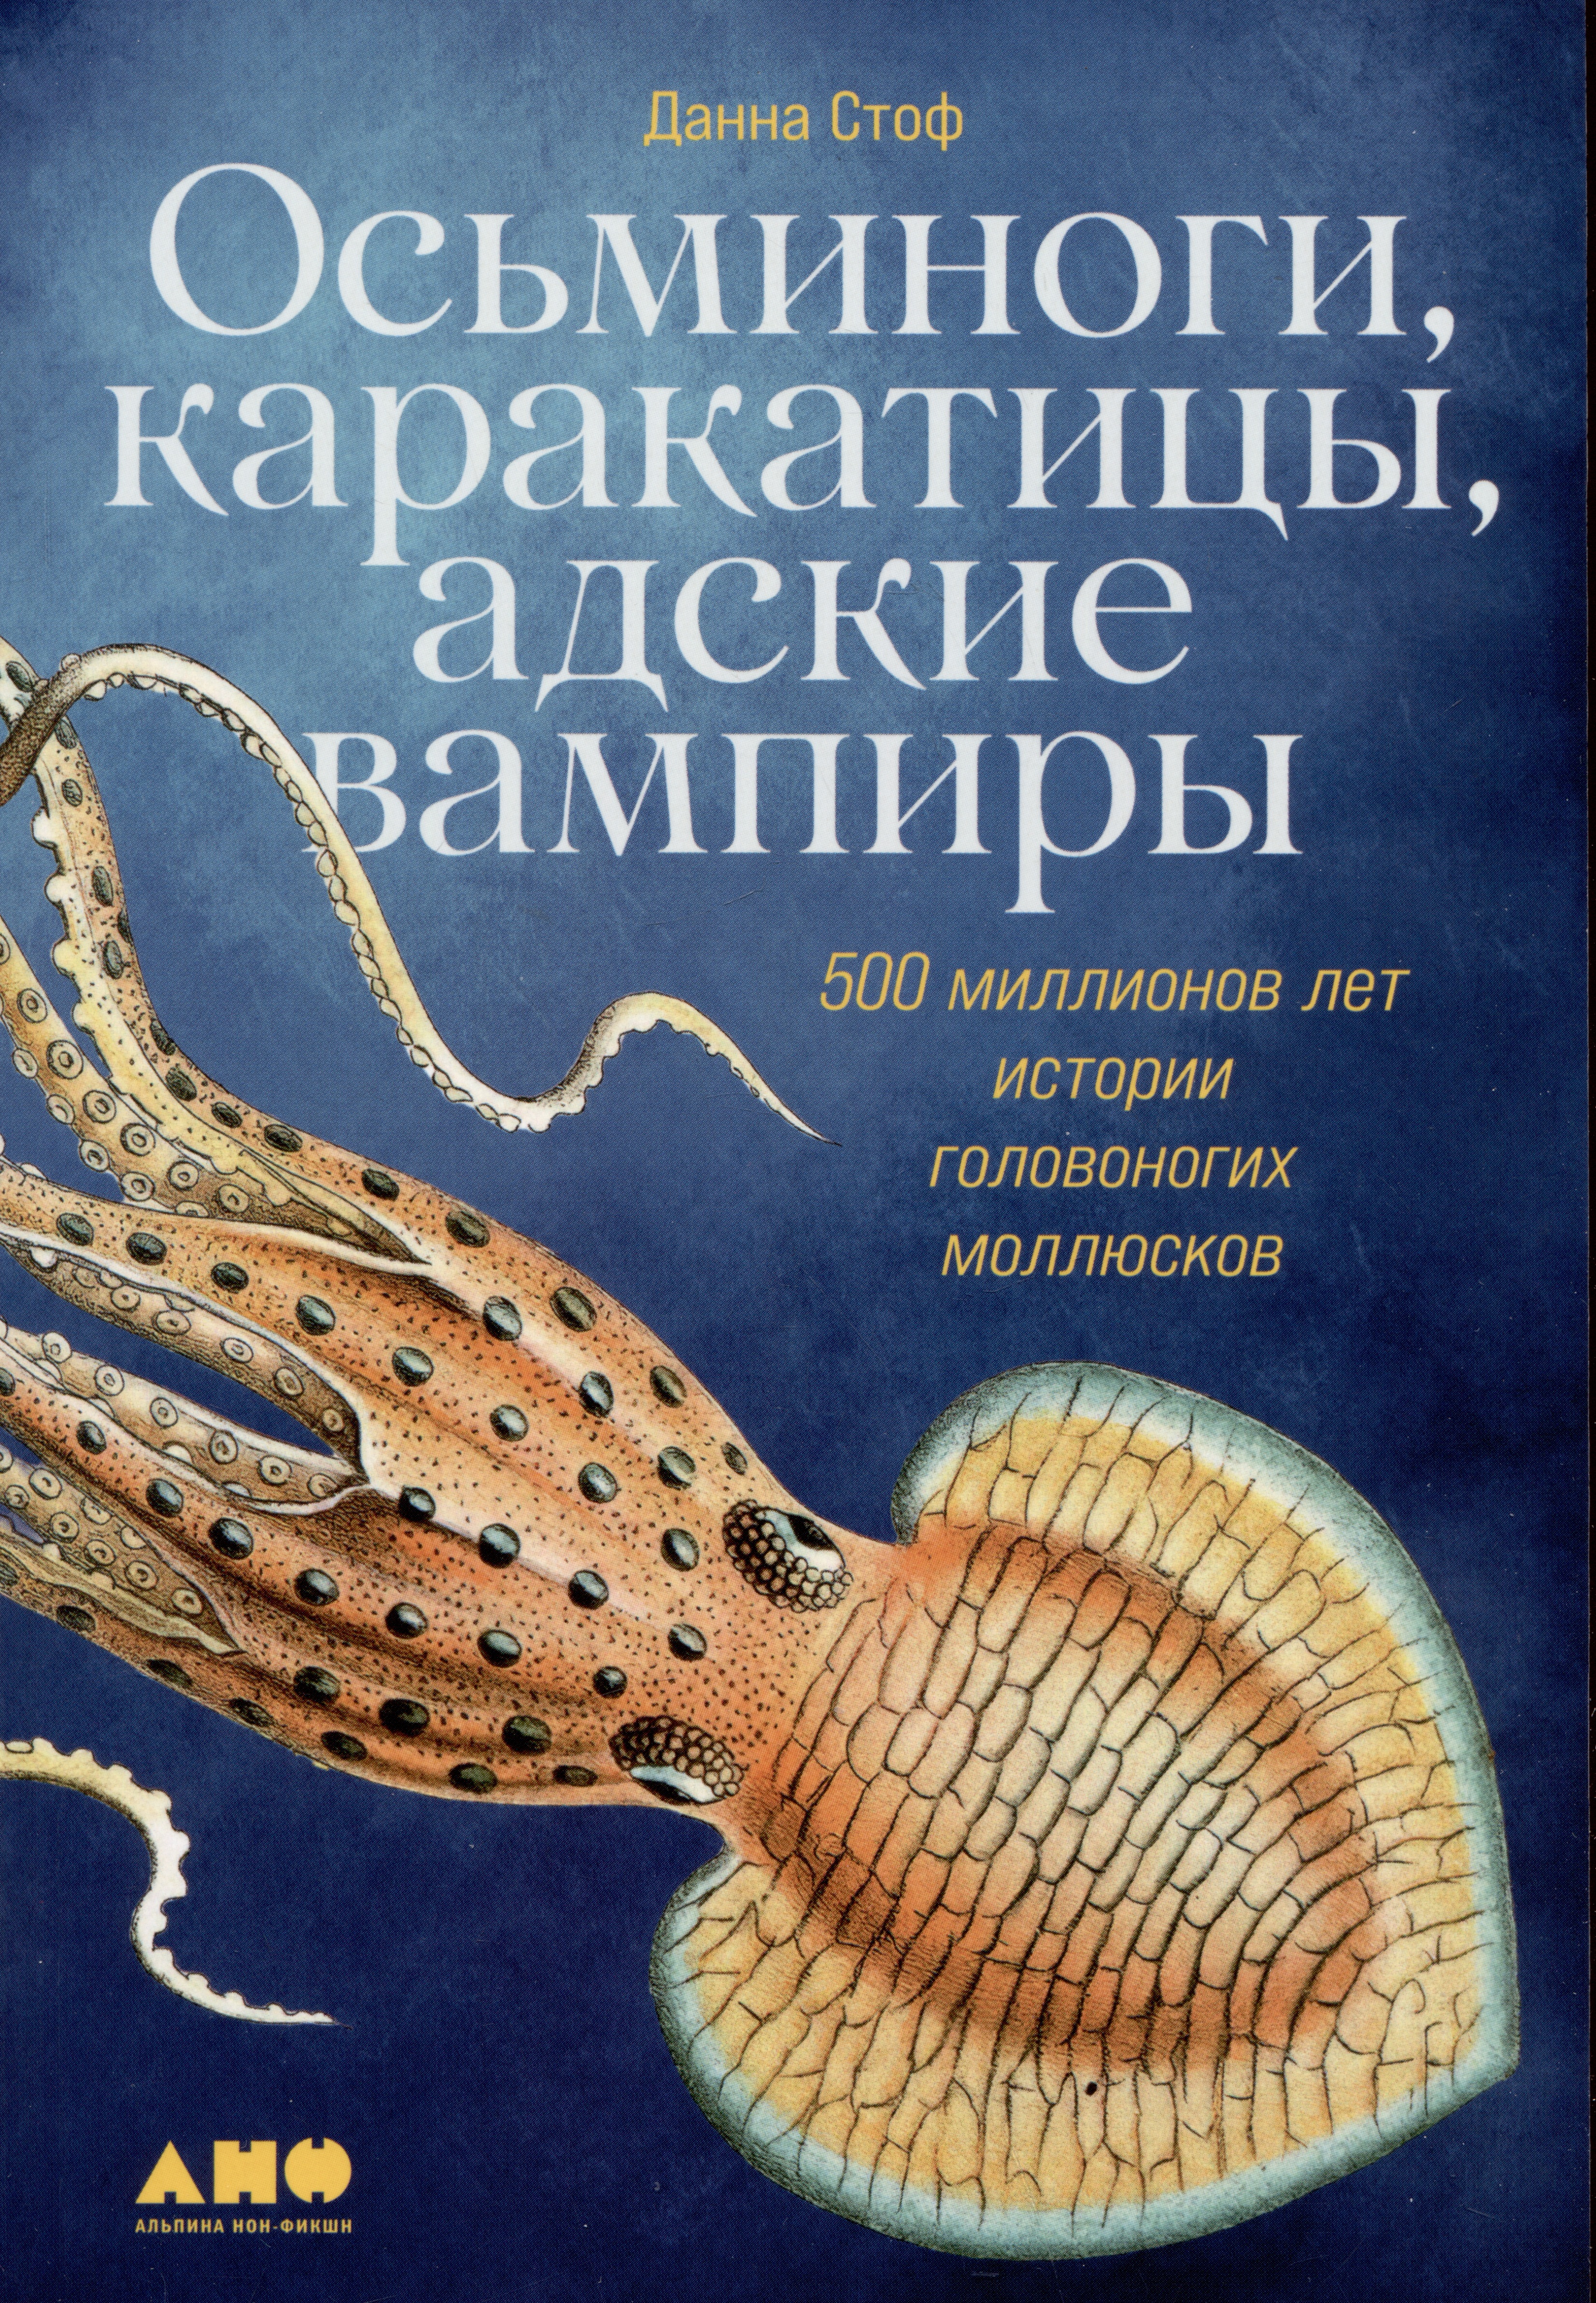 Стоф Данна - Осьминоги, каракатицы, адские вампиры: 500 миллионов лет истории головоногих моллюсков